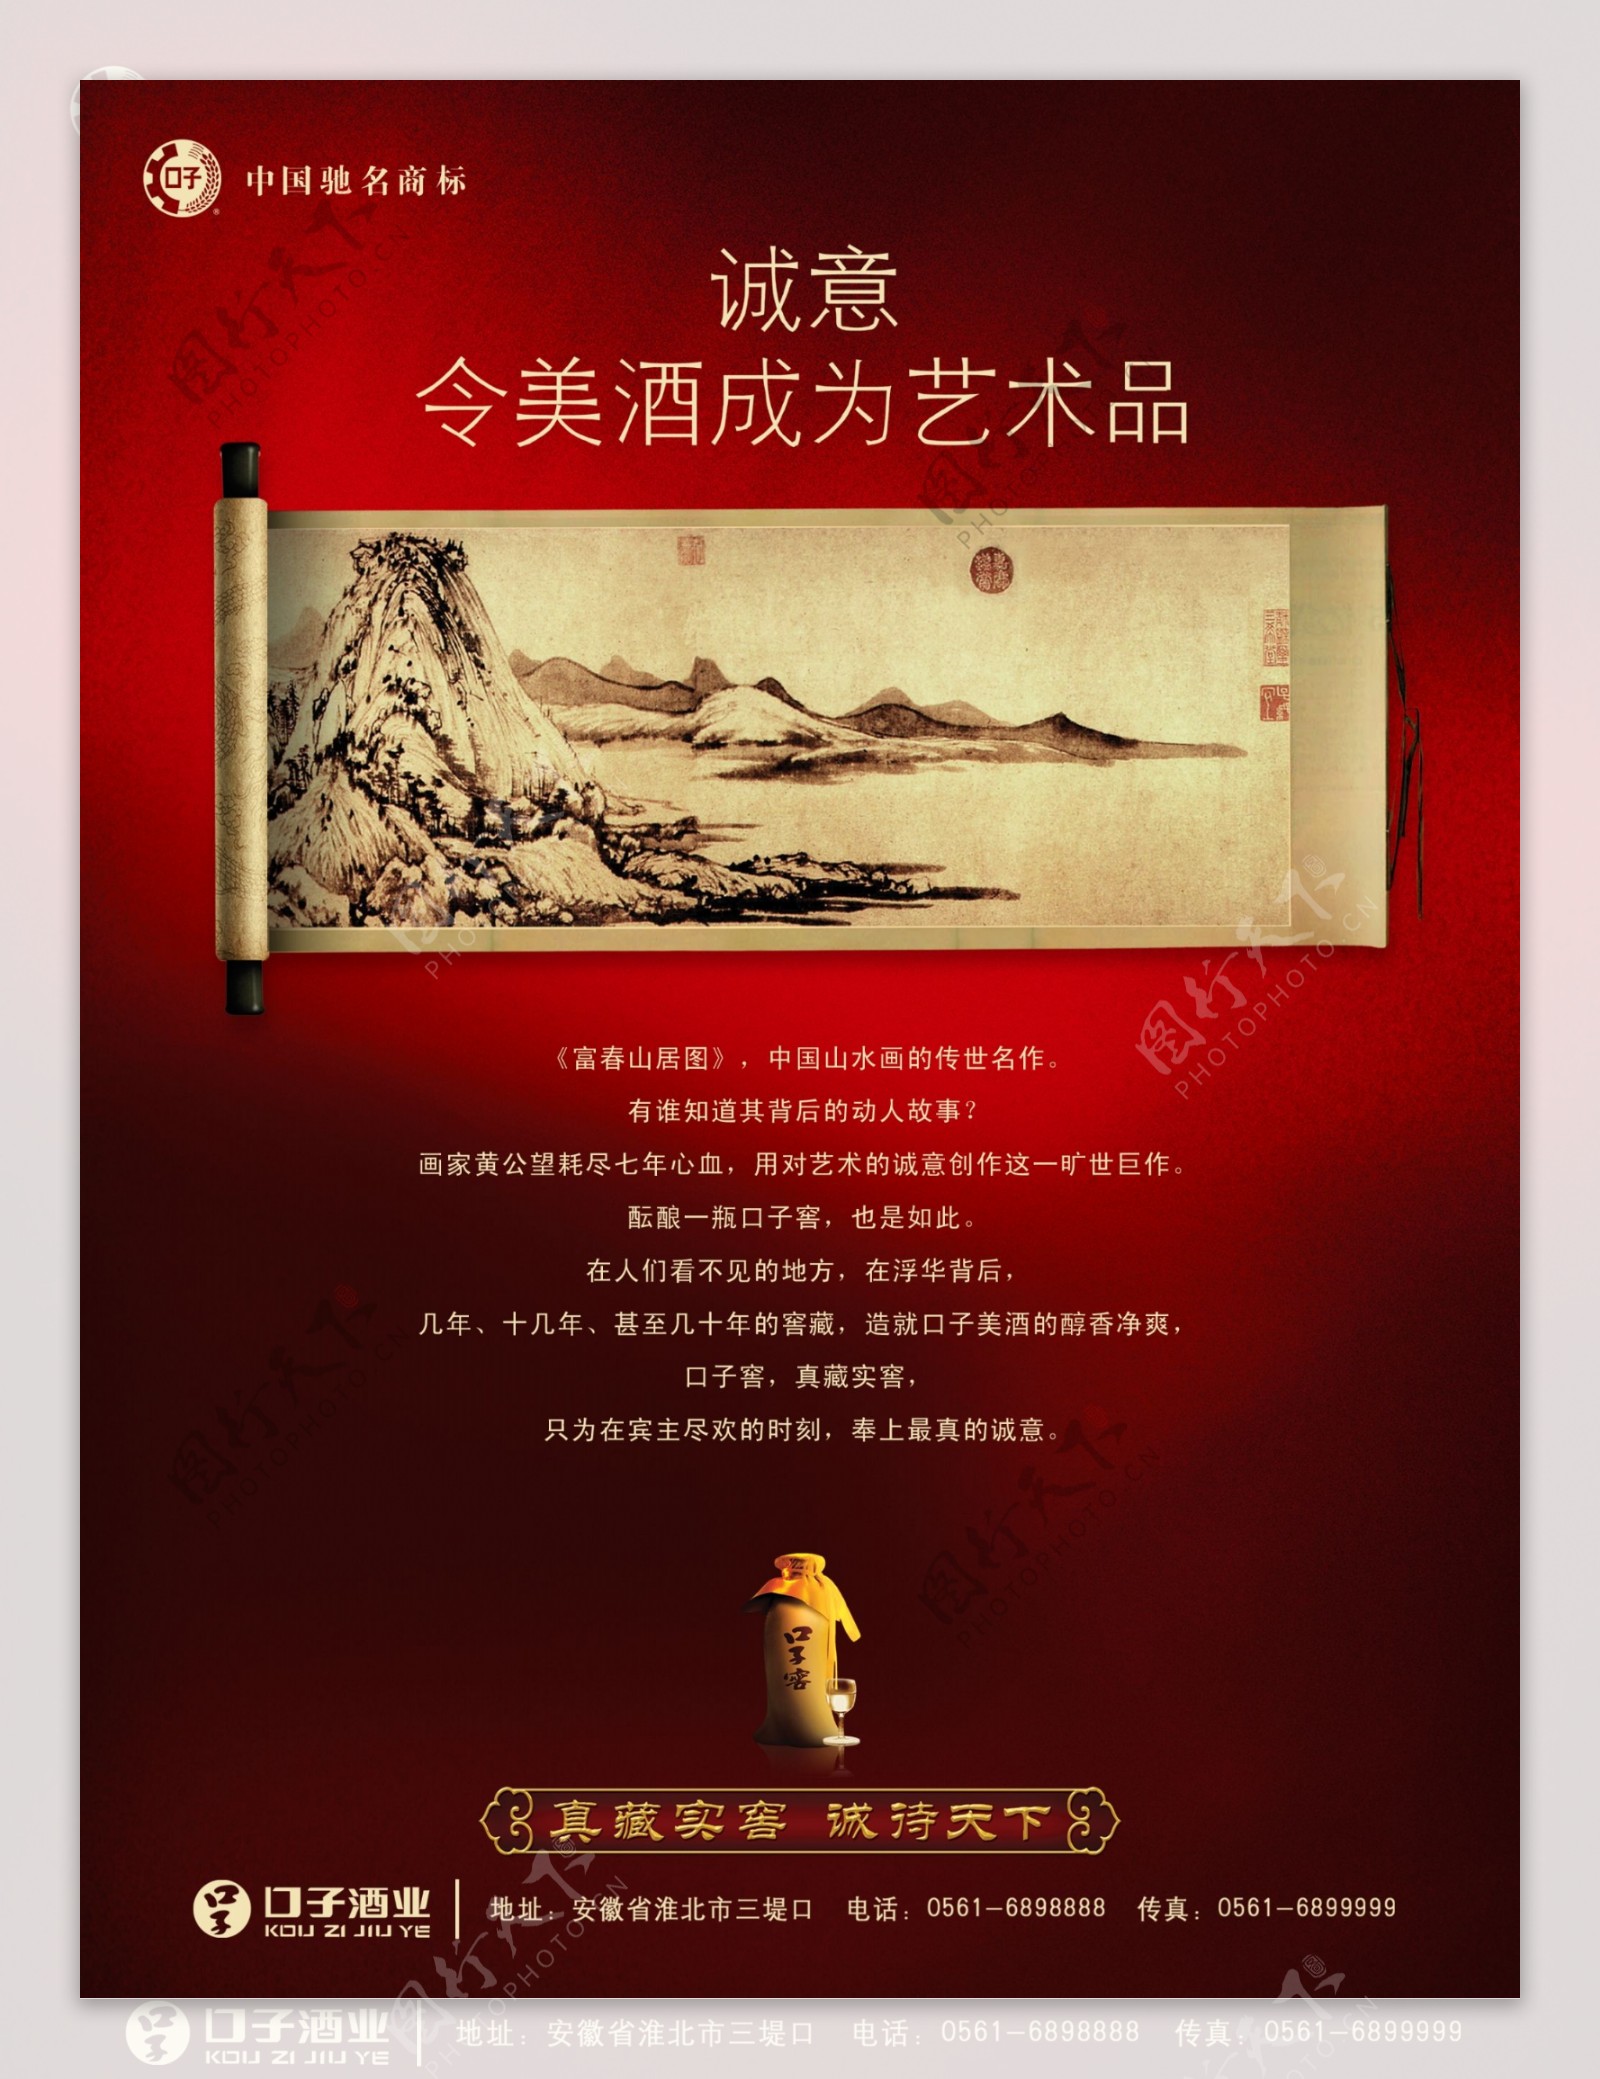 龙腾广告平面广告PSD分层素材源文件酒口子酒业国画